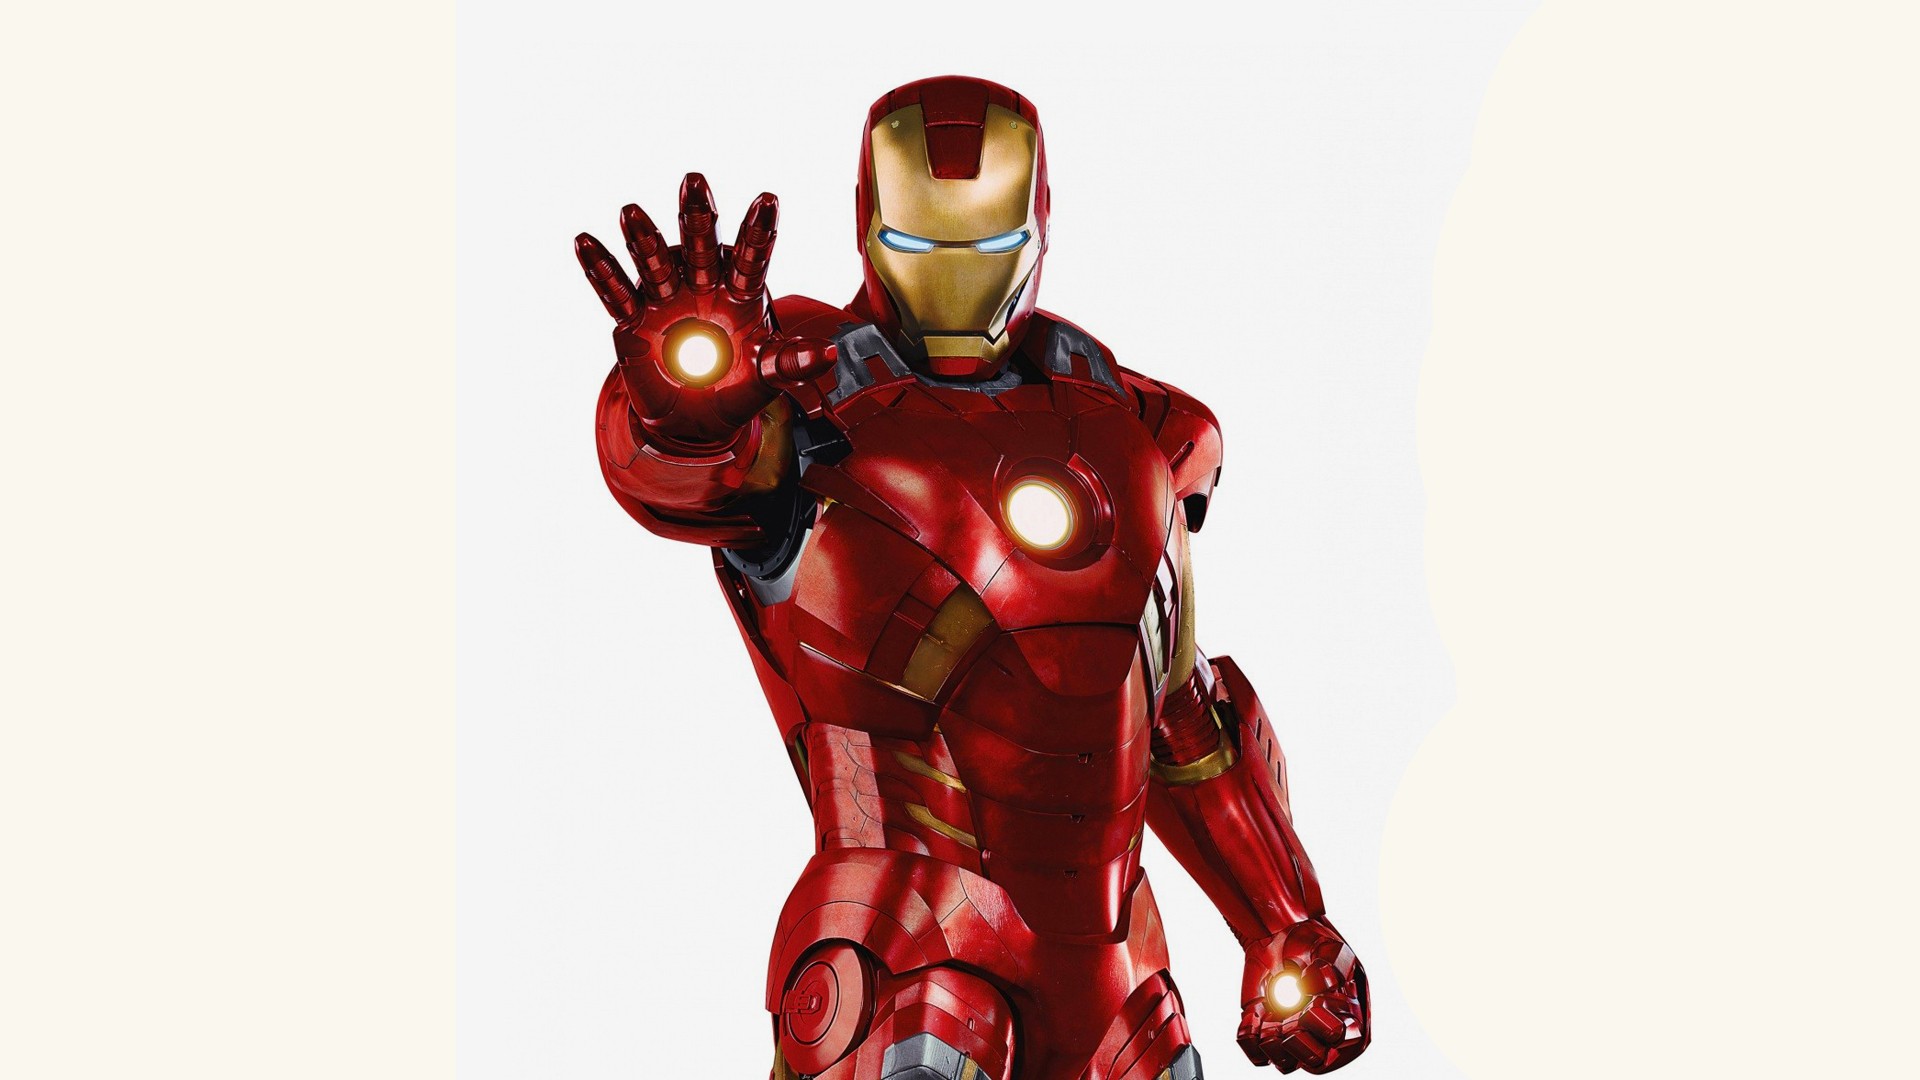  Compañía espacial SpaceX contrata al diseñador de Iron Man para hacer trajes especiales